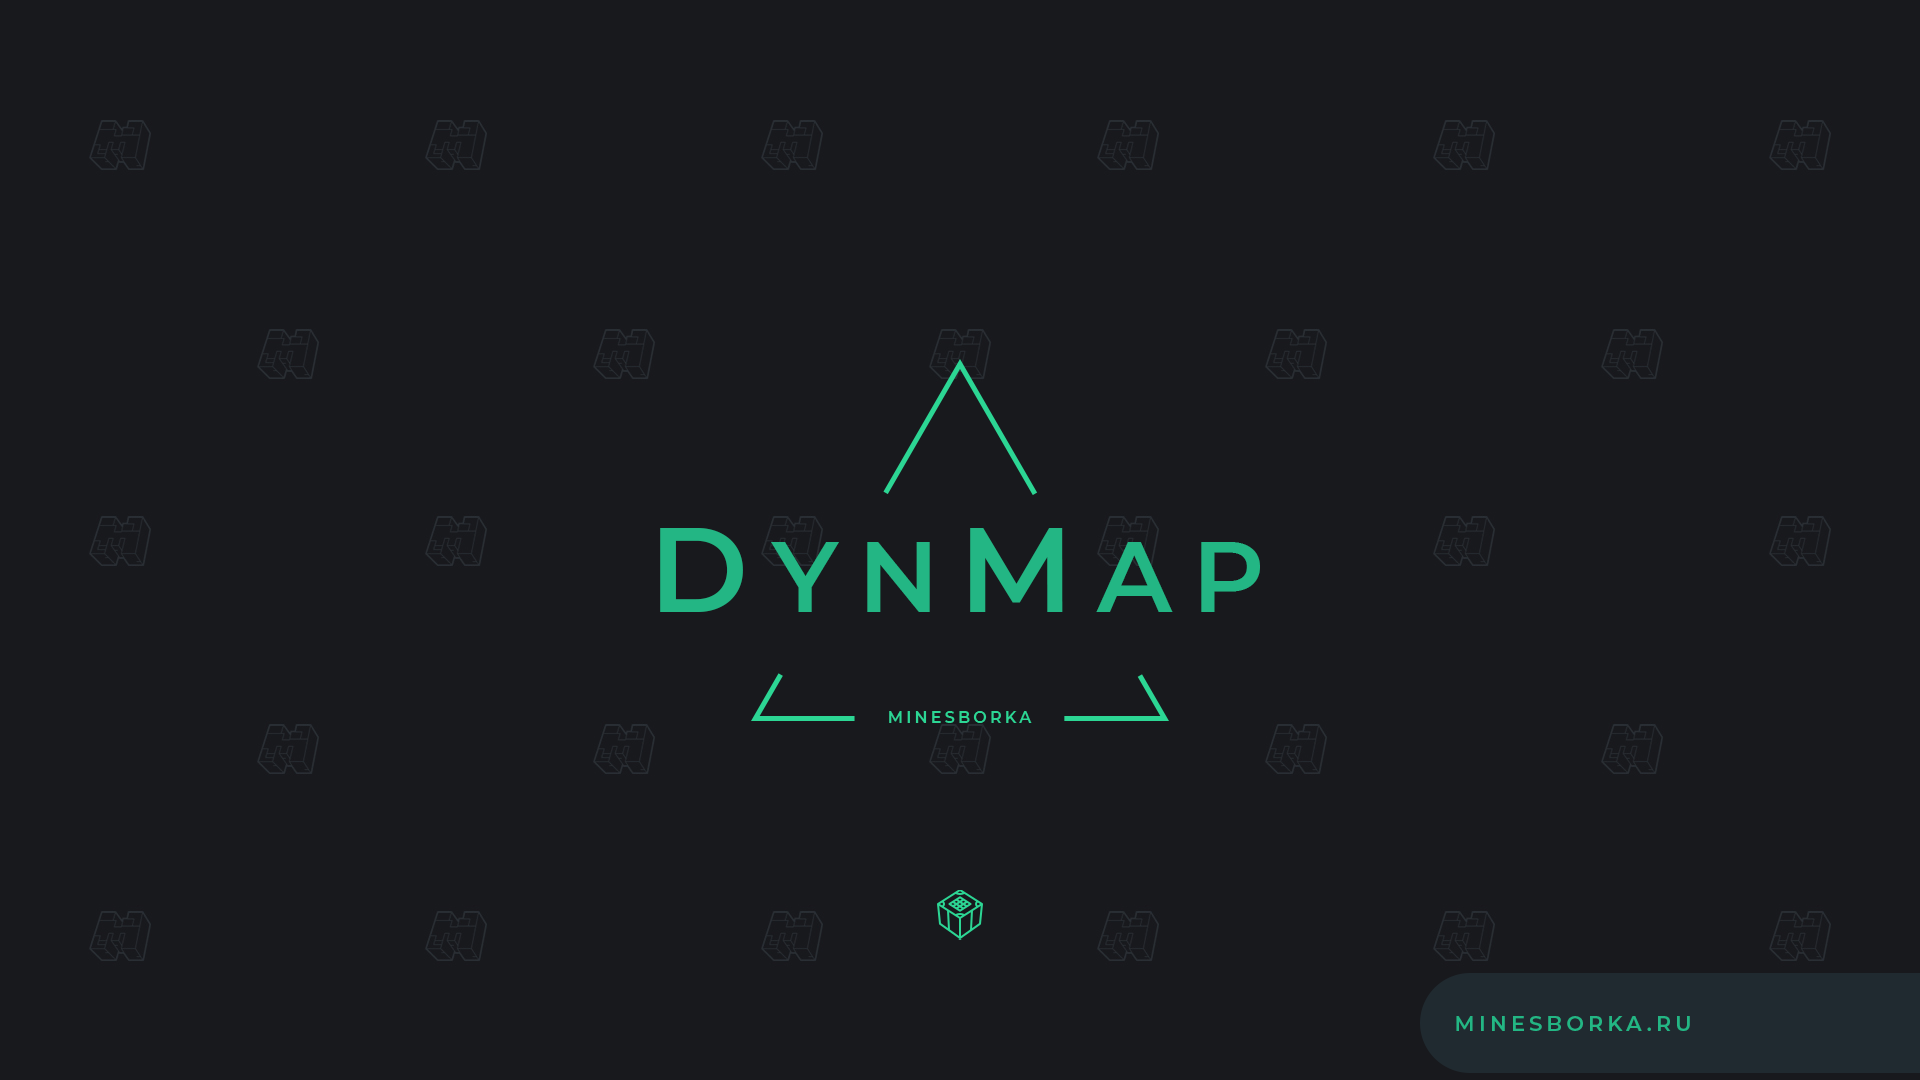 Скачать плагин Dynmap | Онлайн-карта сервера Minecraft в браузере + чат